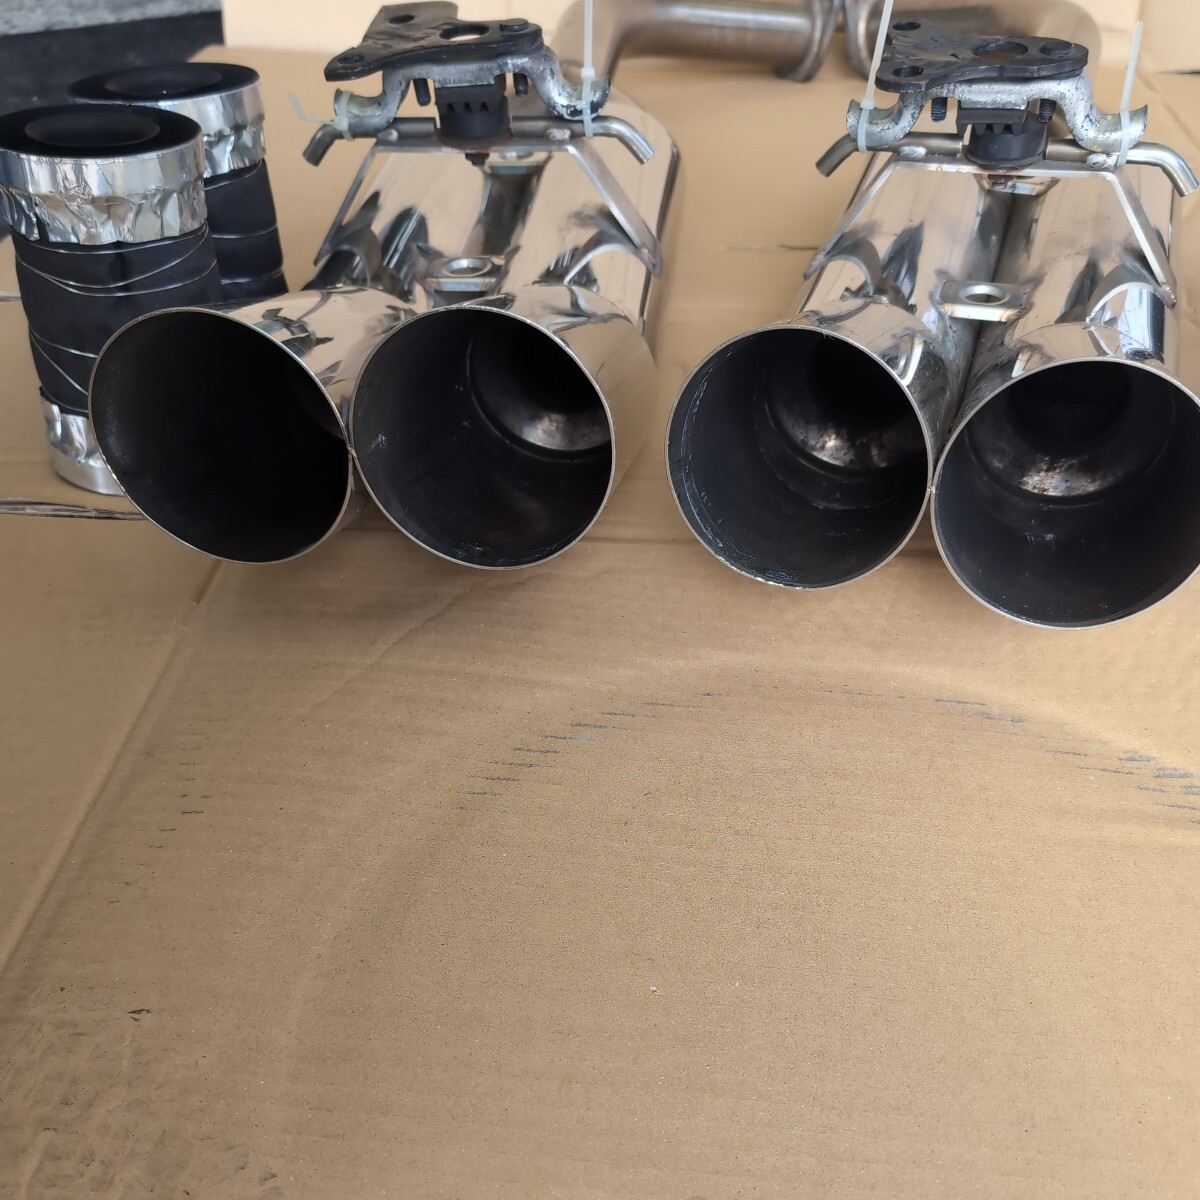  Honshu Shikoku Kyushu free shipping Garcon muffler 4 pipe out UCF11 Celsior that time thing addition siren -4 piece & new goods muffler gasket 2 sheets attaching 